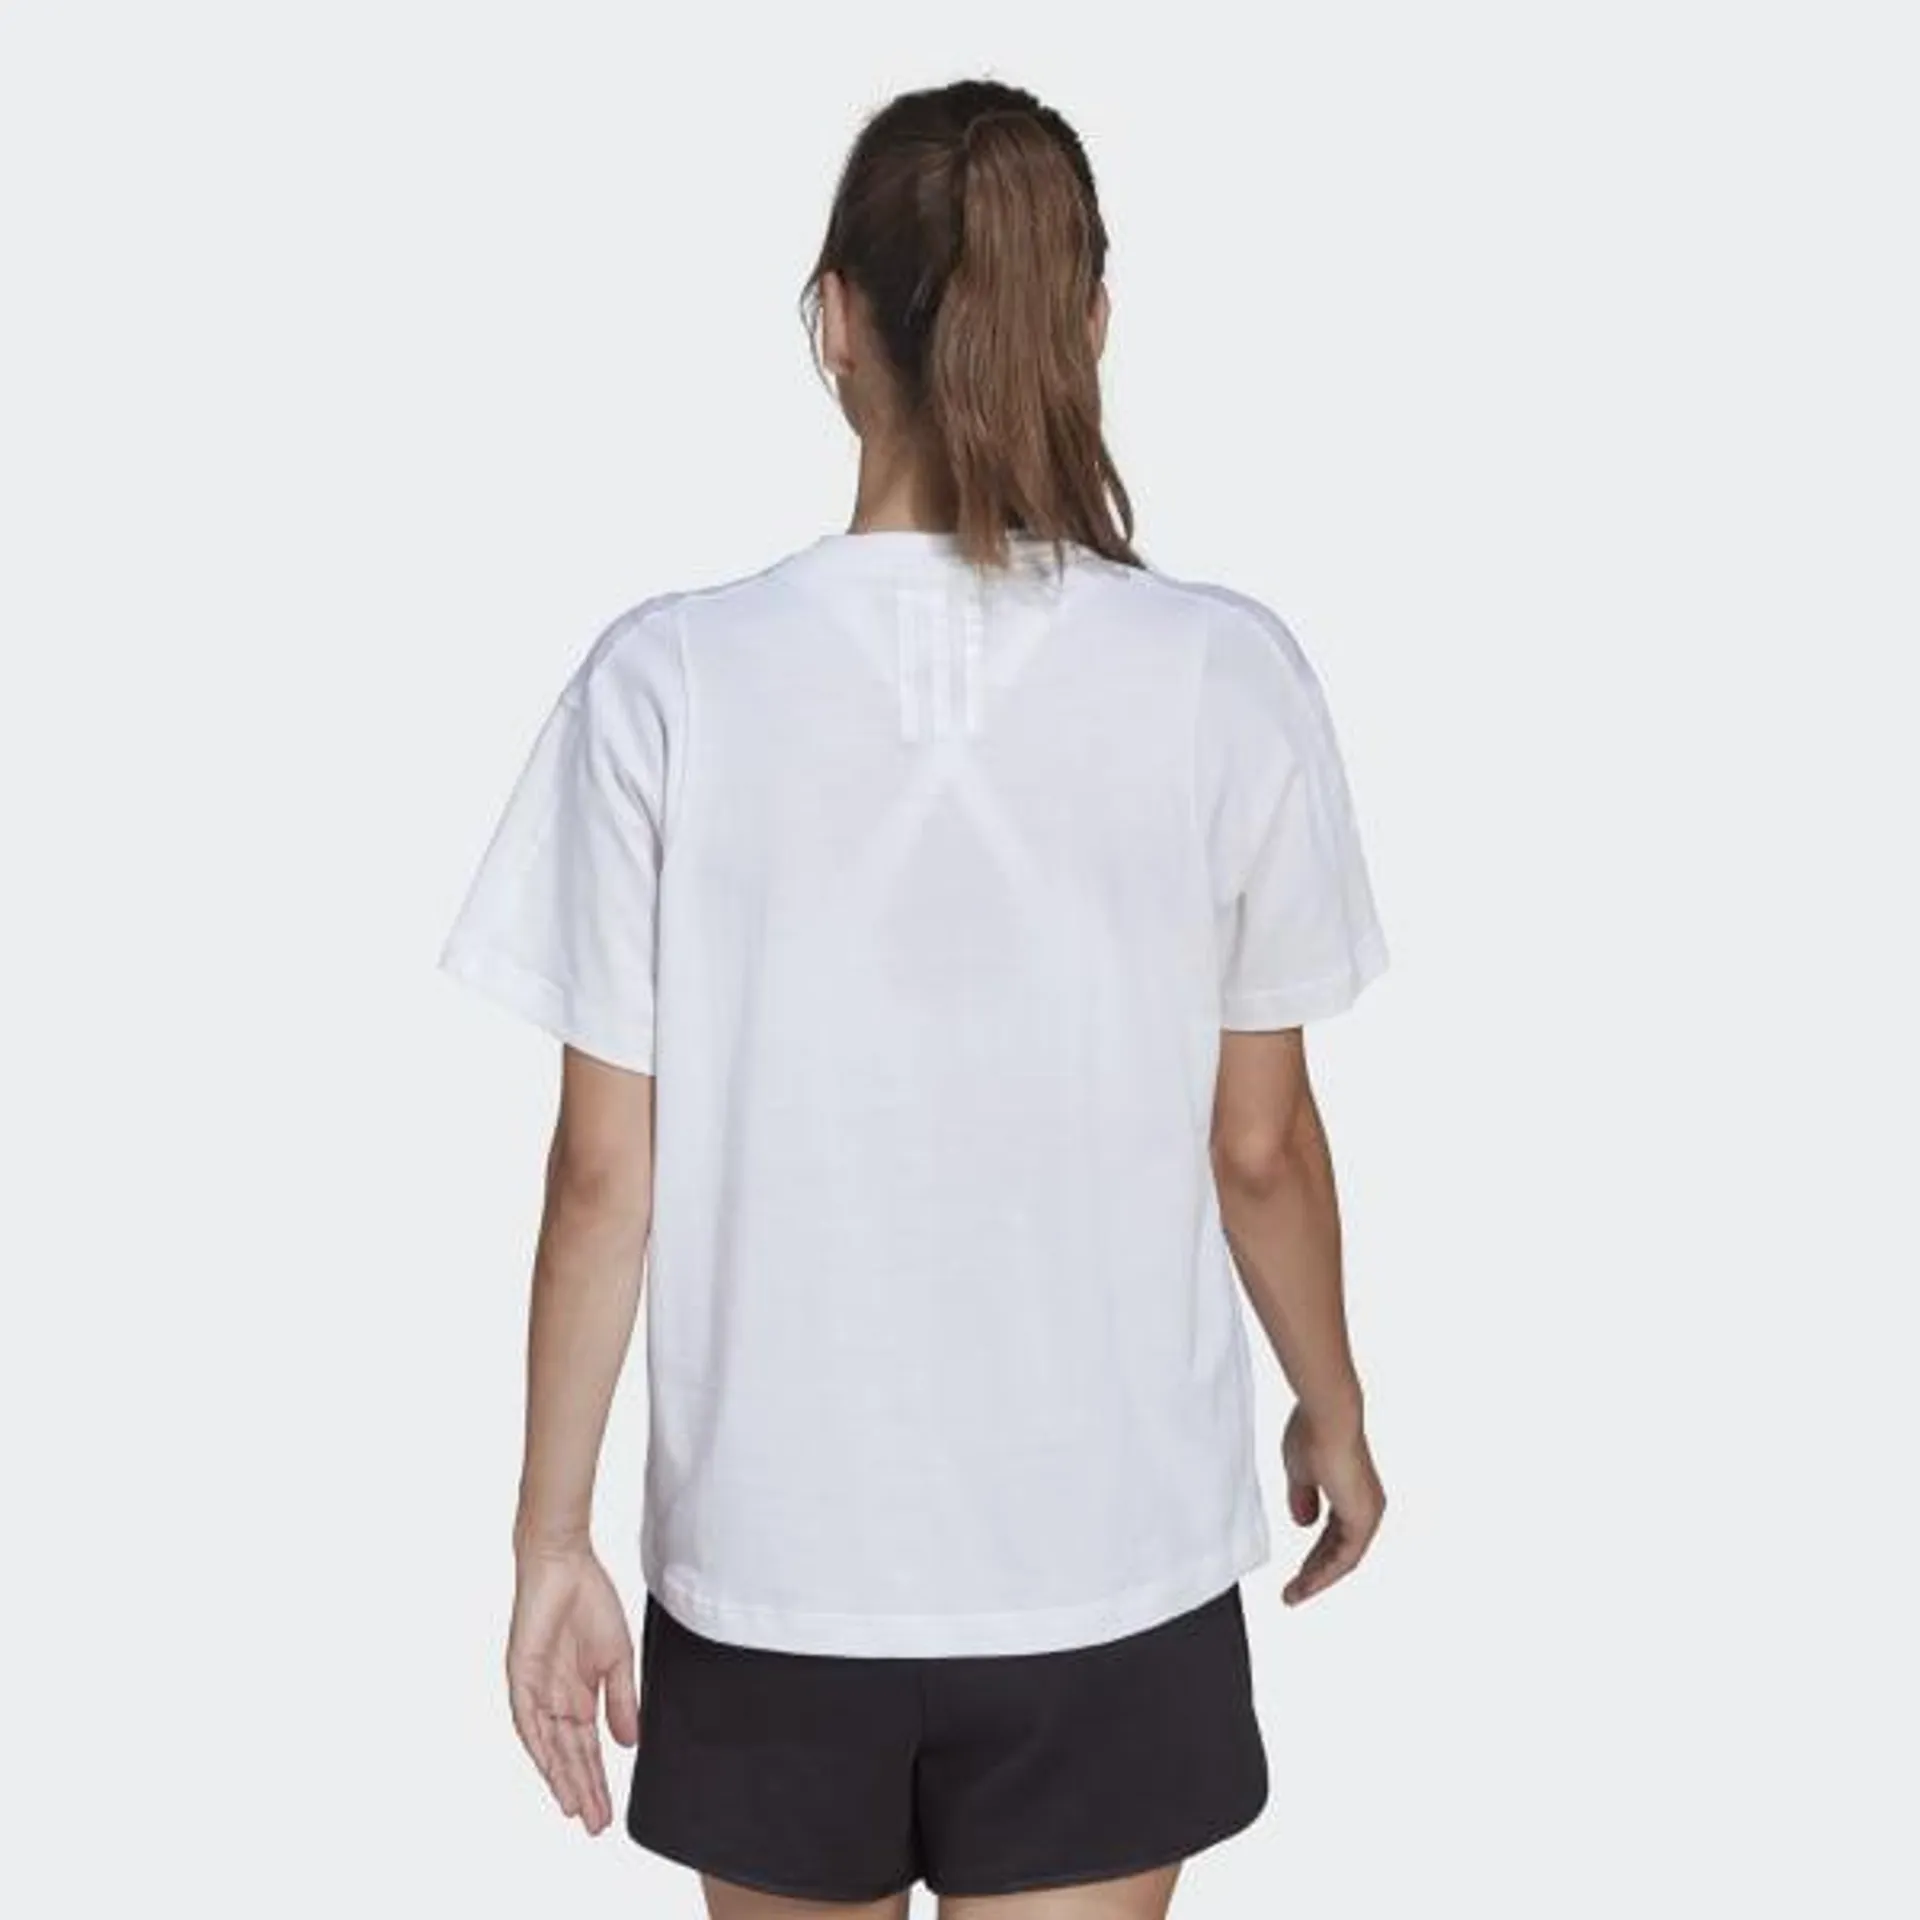 adidas x Karlie Kloss Crop T-shirt